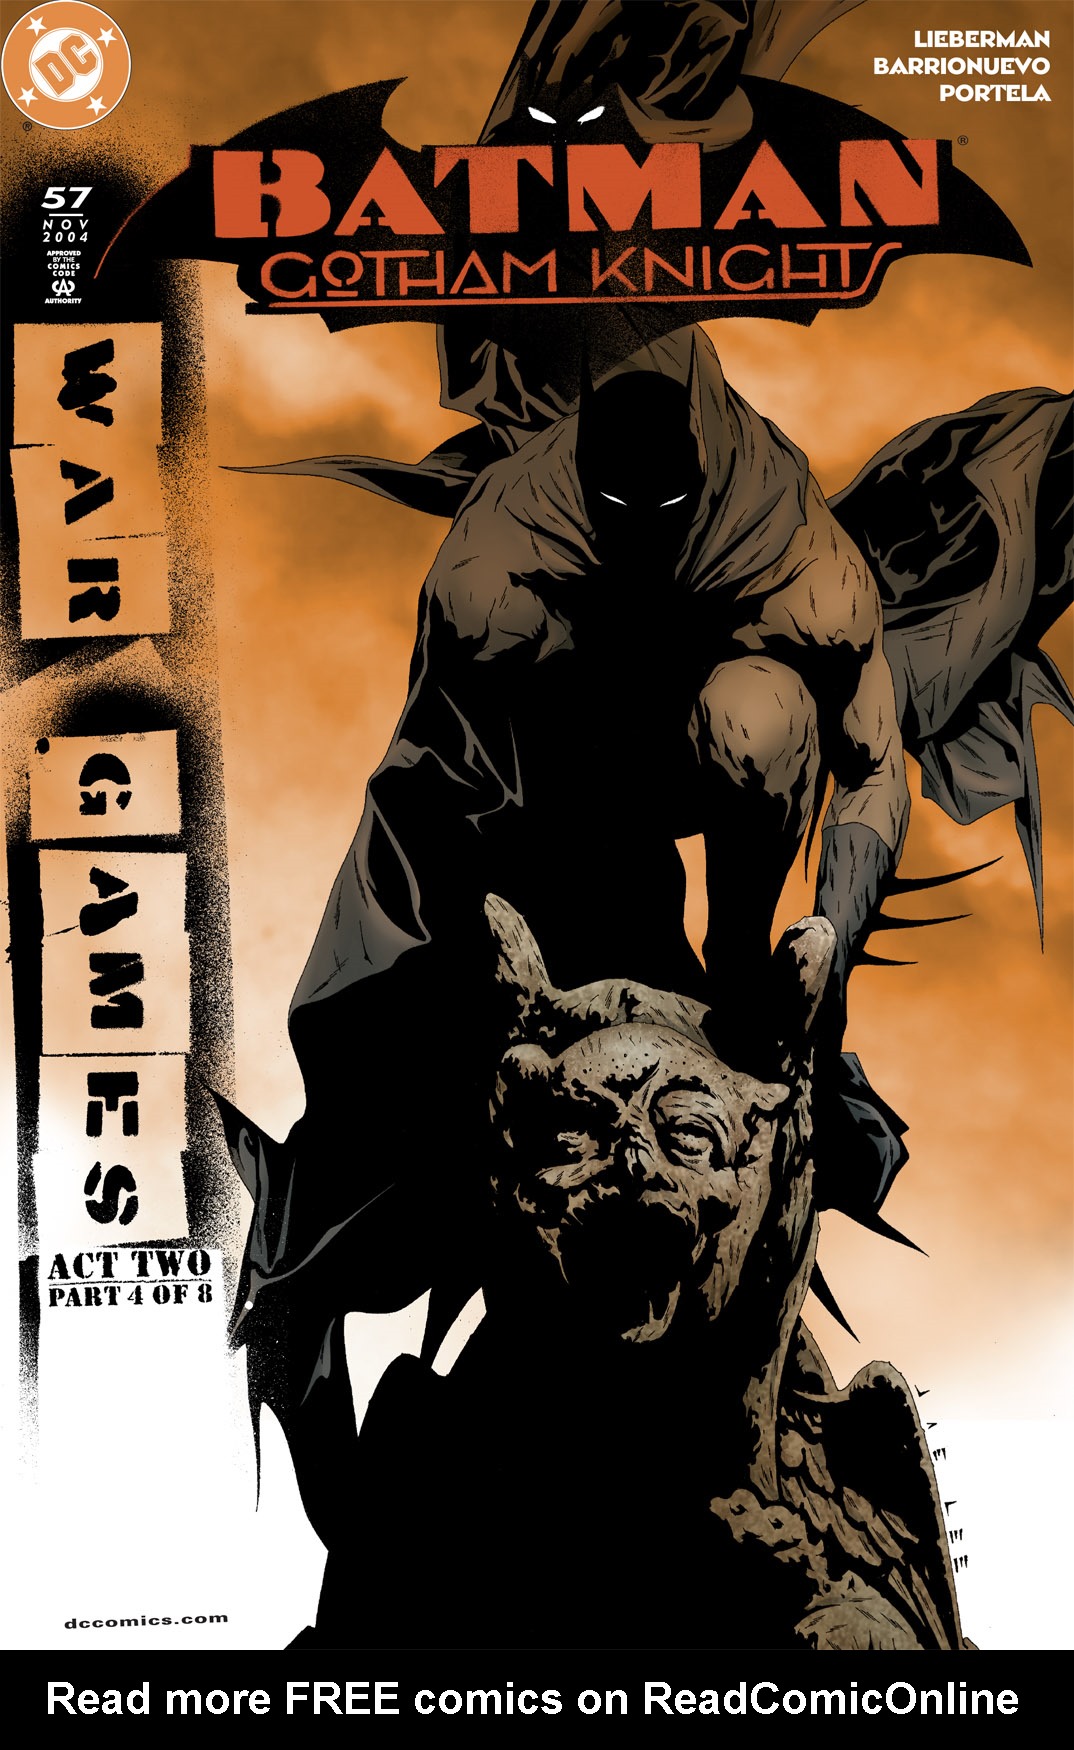 Batman War Games Act 2 Tides Issue 4 | Read Batman War Games Act 2 Tides  Issue 4 comic online in high quality. Read Full Comic online for free - Read  comics